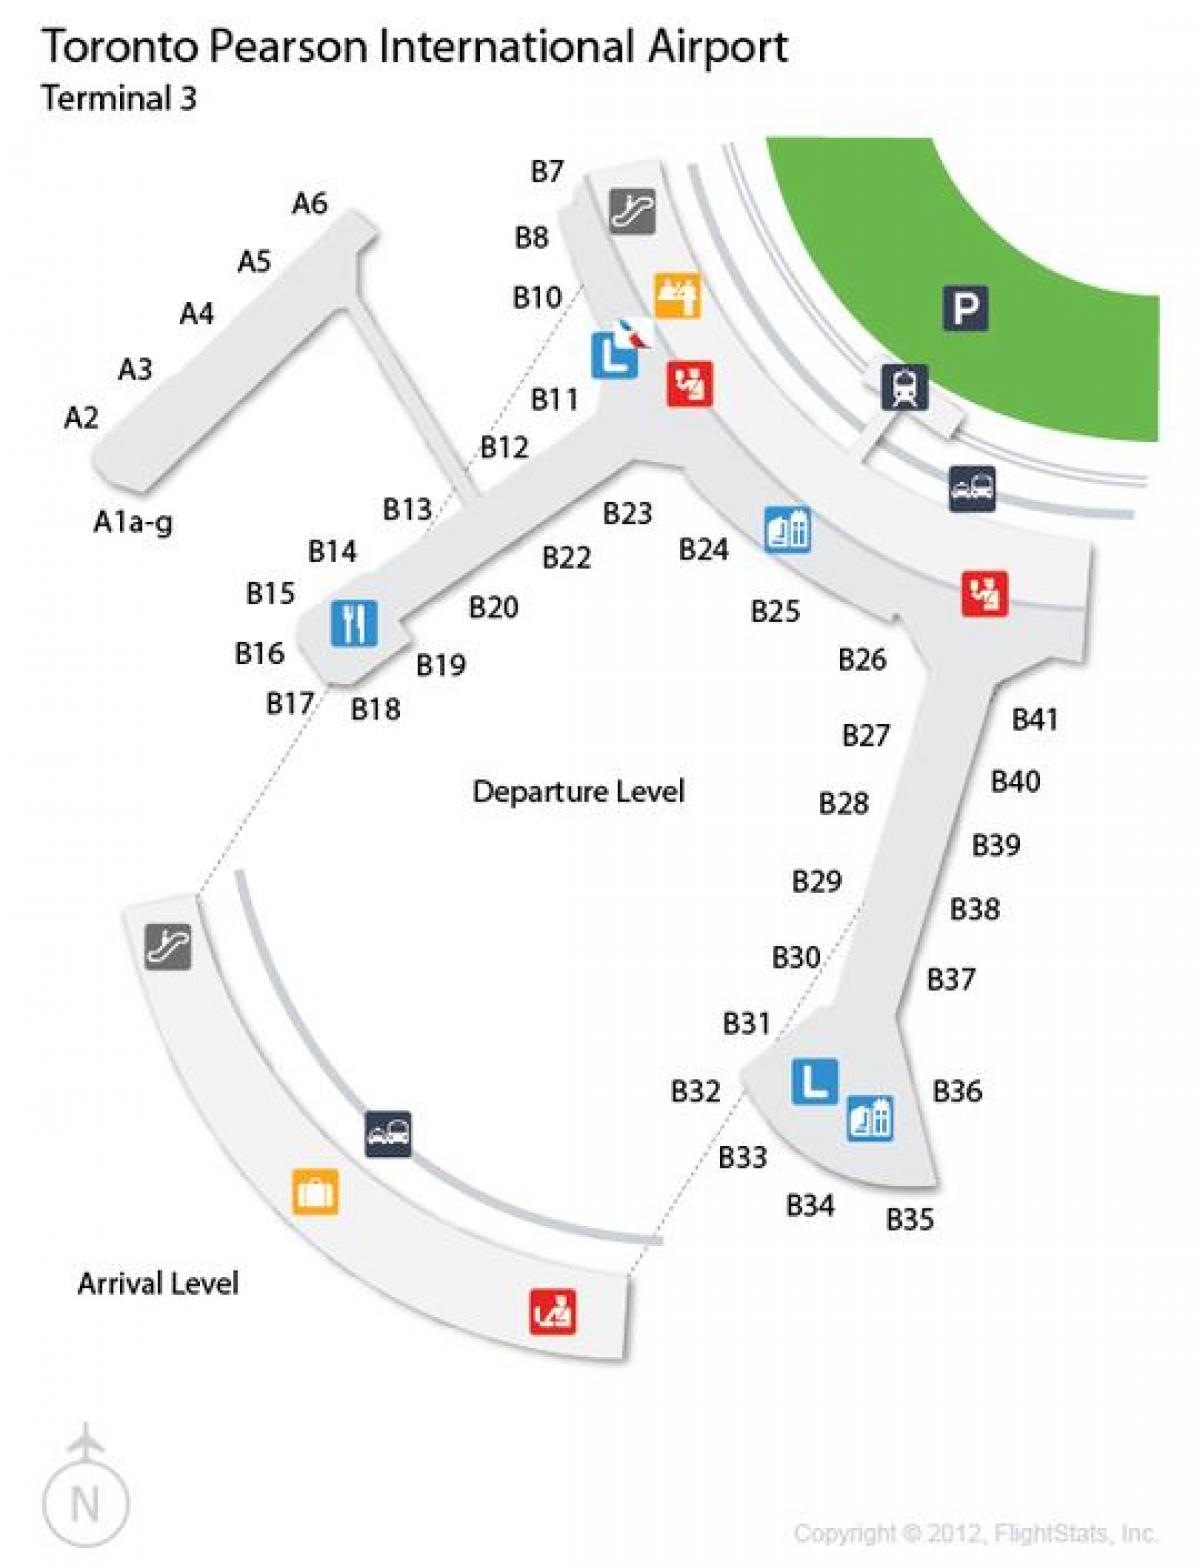 რუკა ტორონტოში Pearson საერთაშორისო აეროპორტის ტერმინალის 3